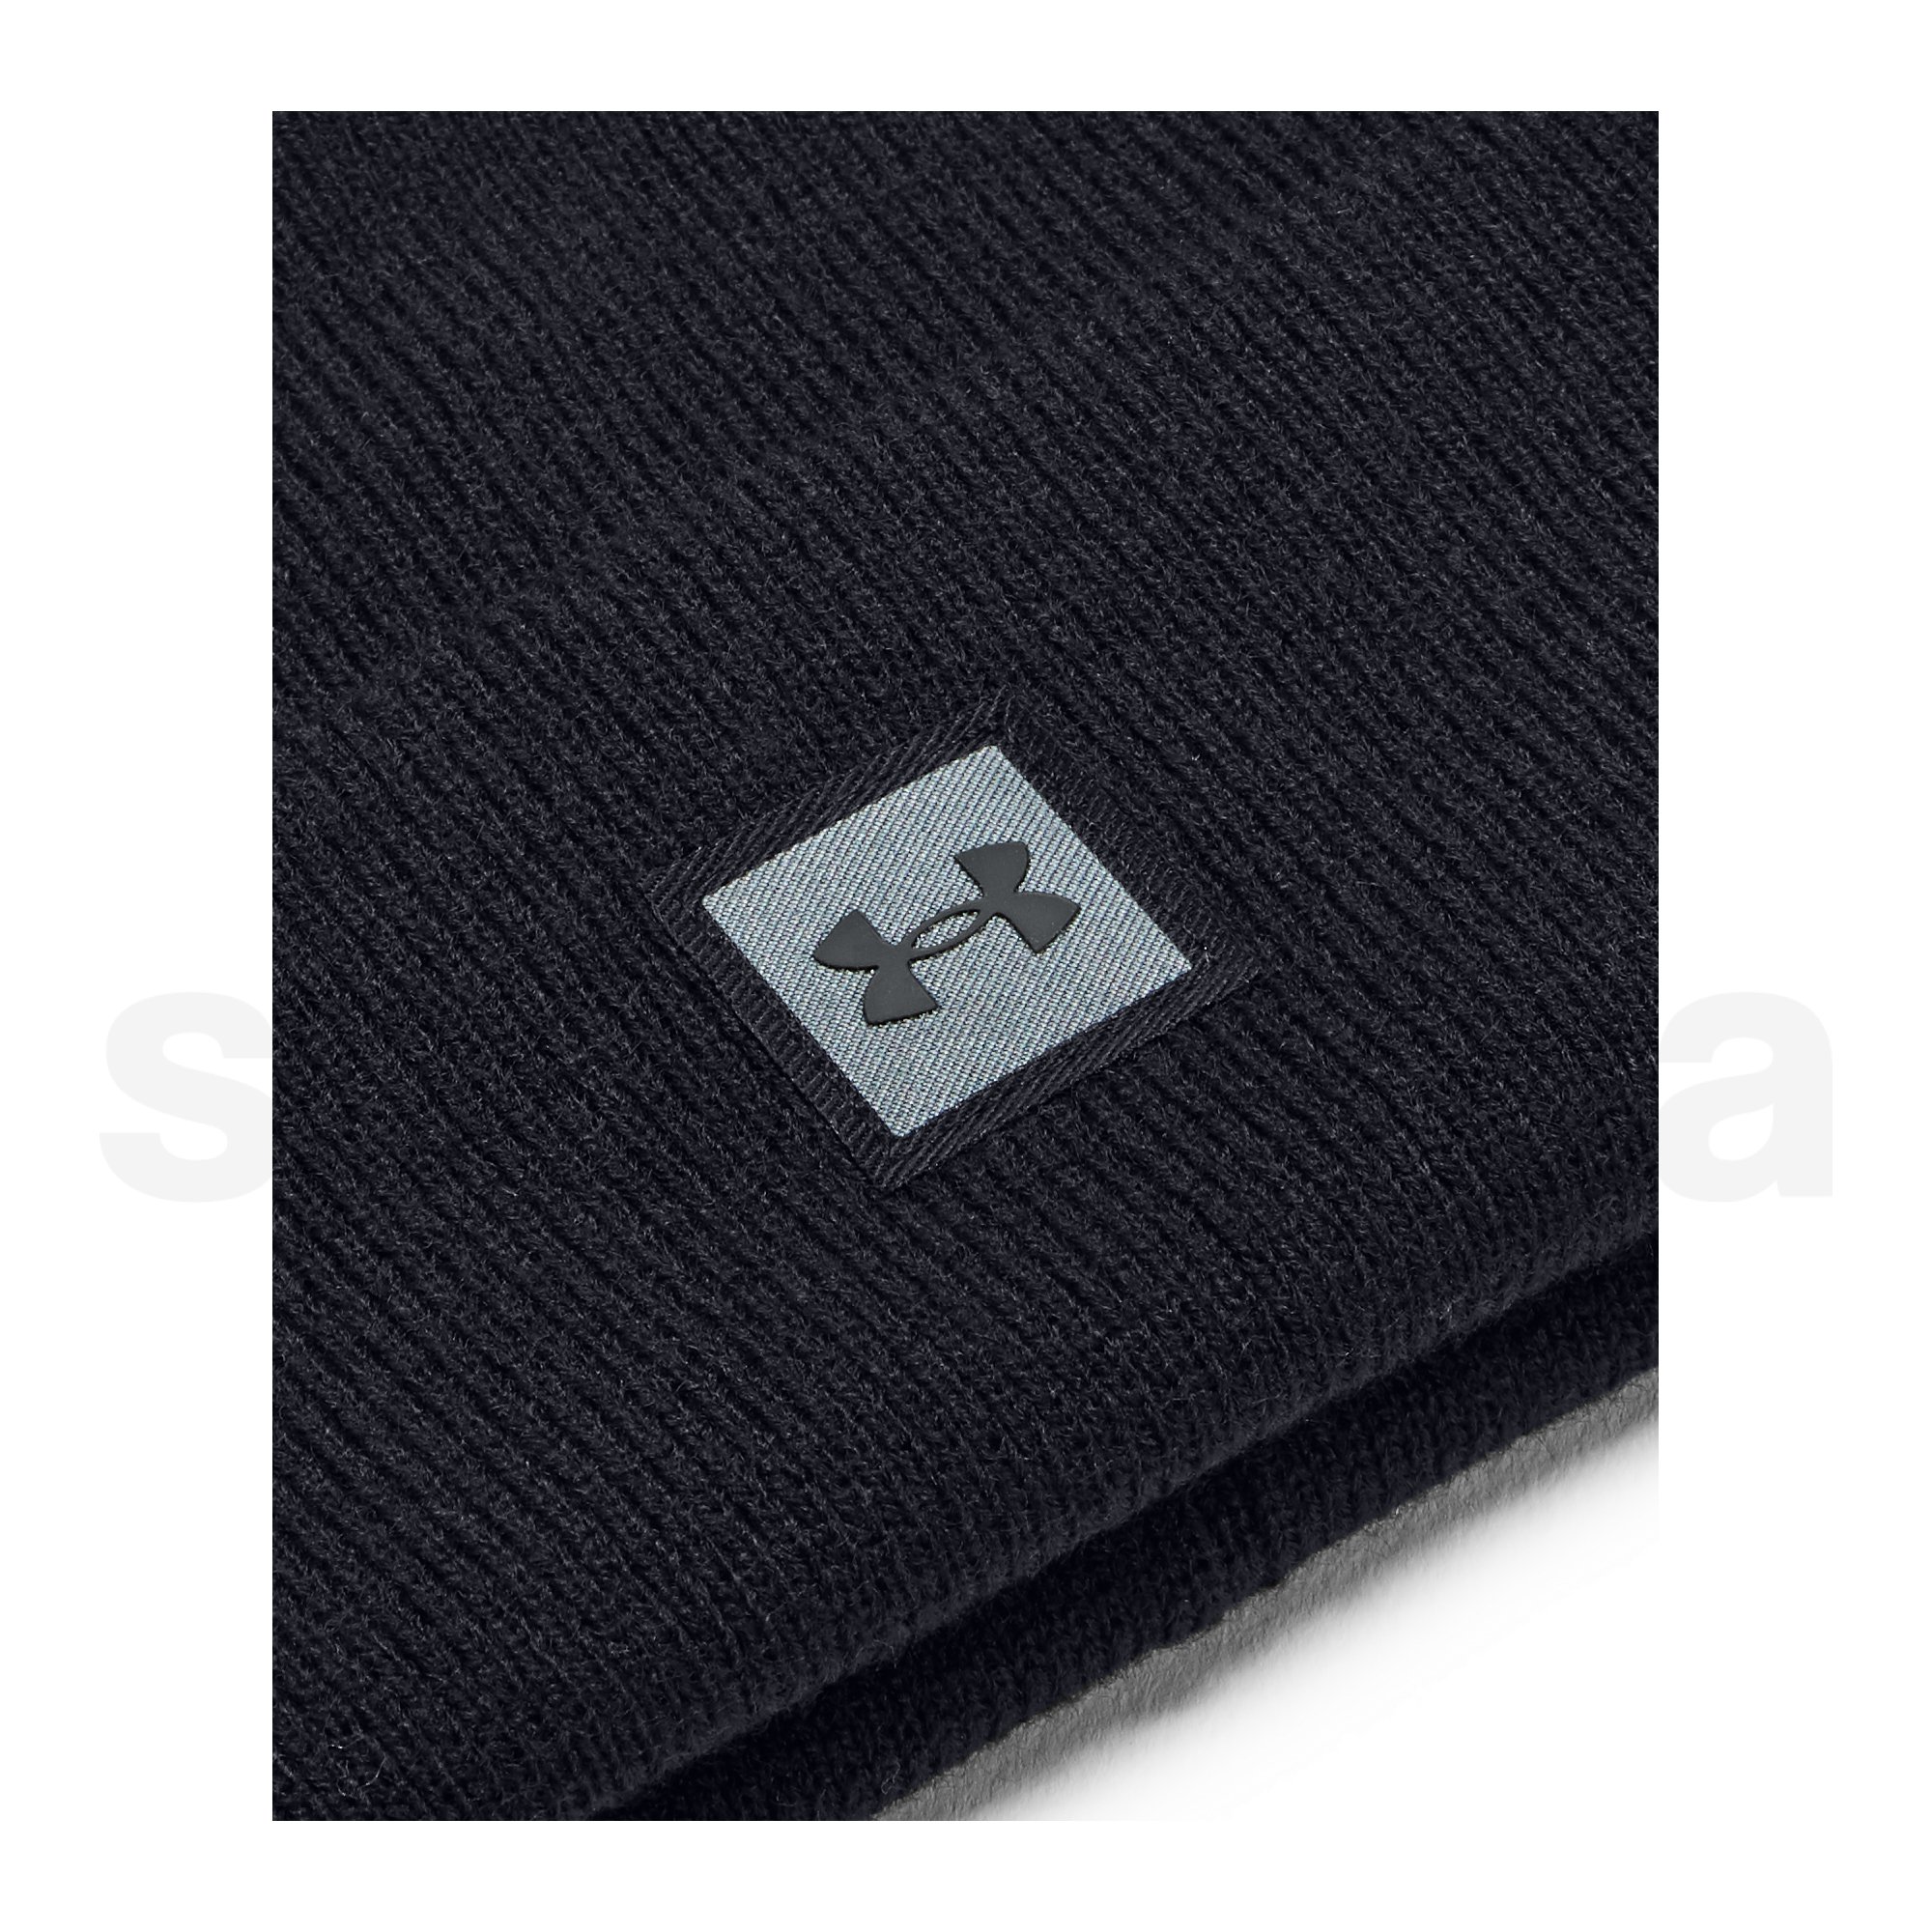 Čepice Under Armour Halftime Knit Beanie - černá